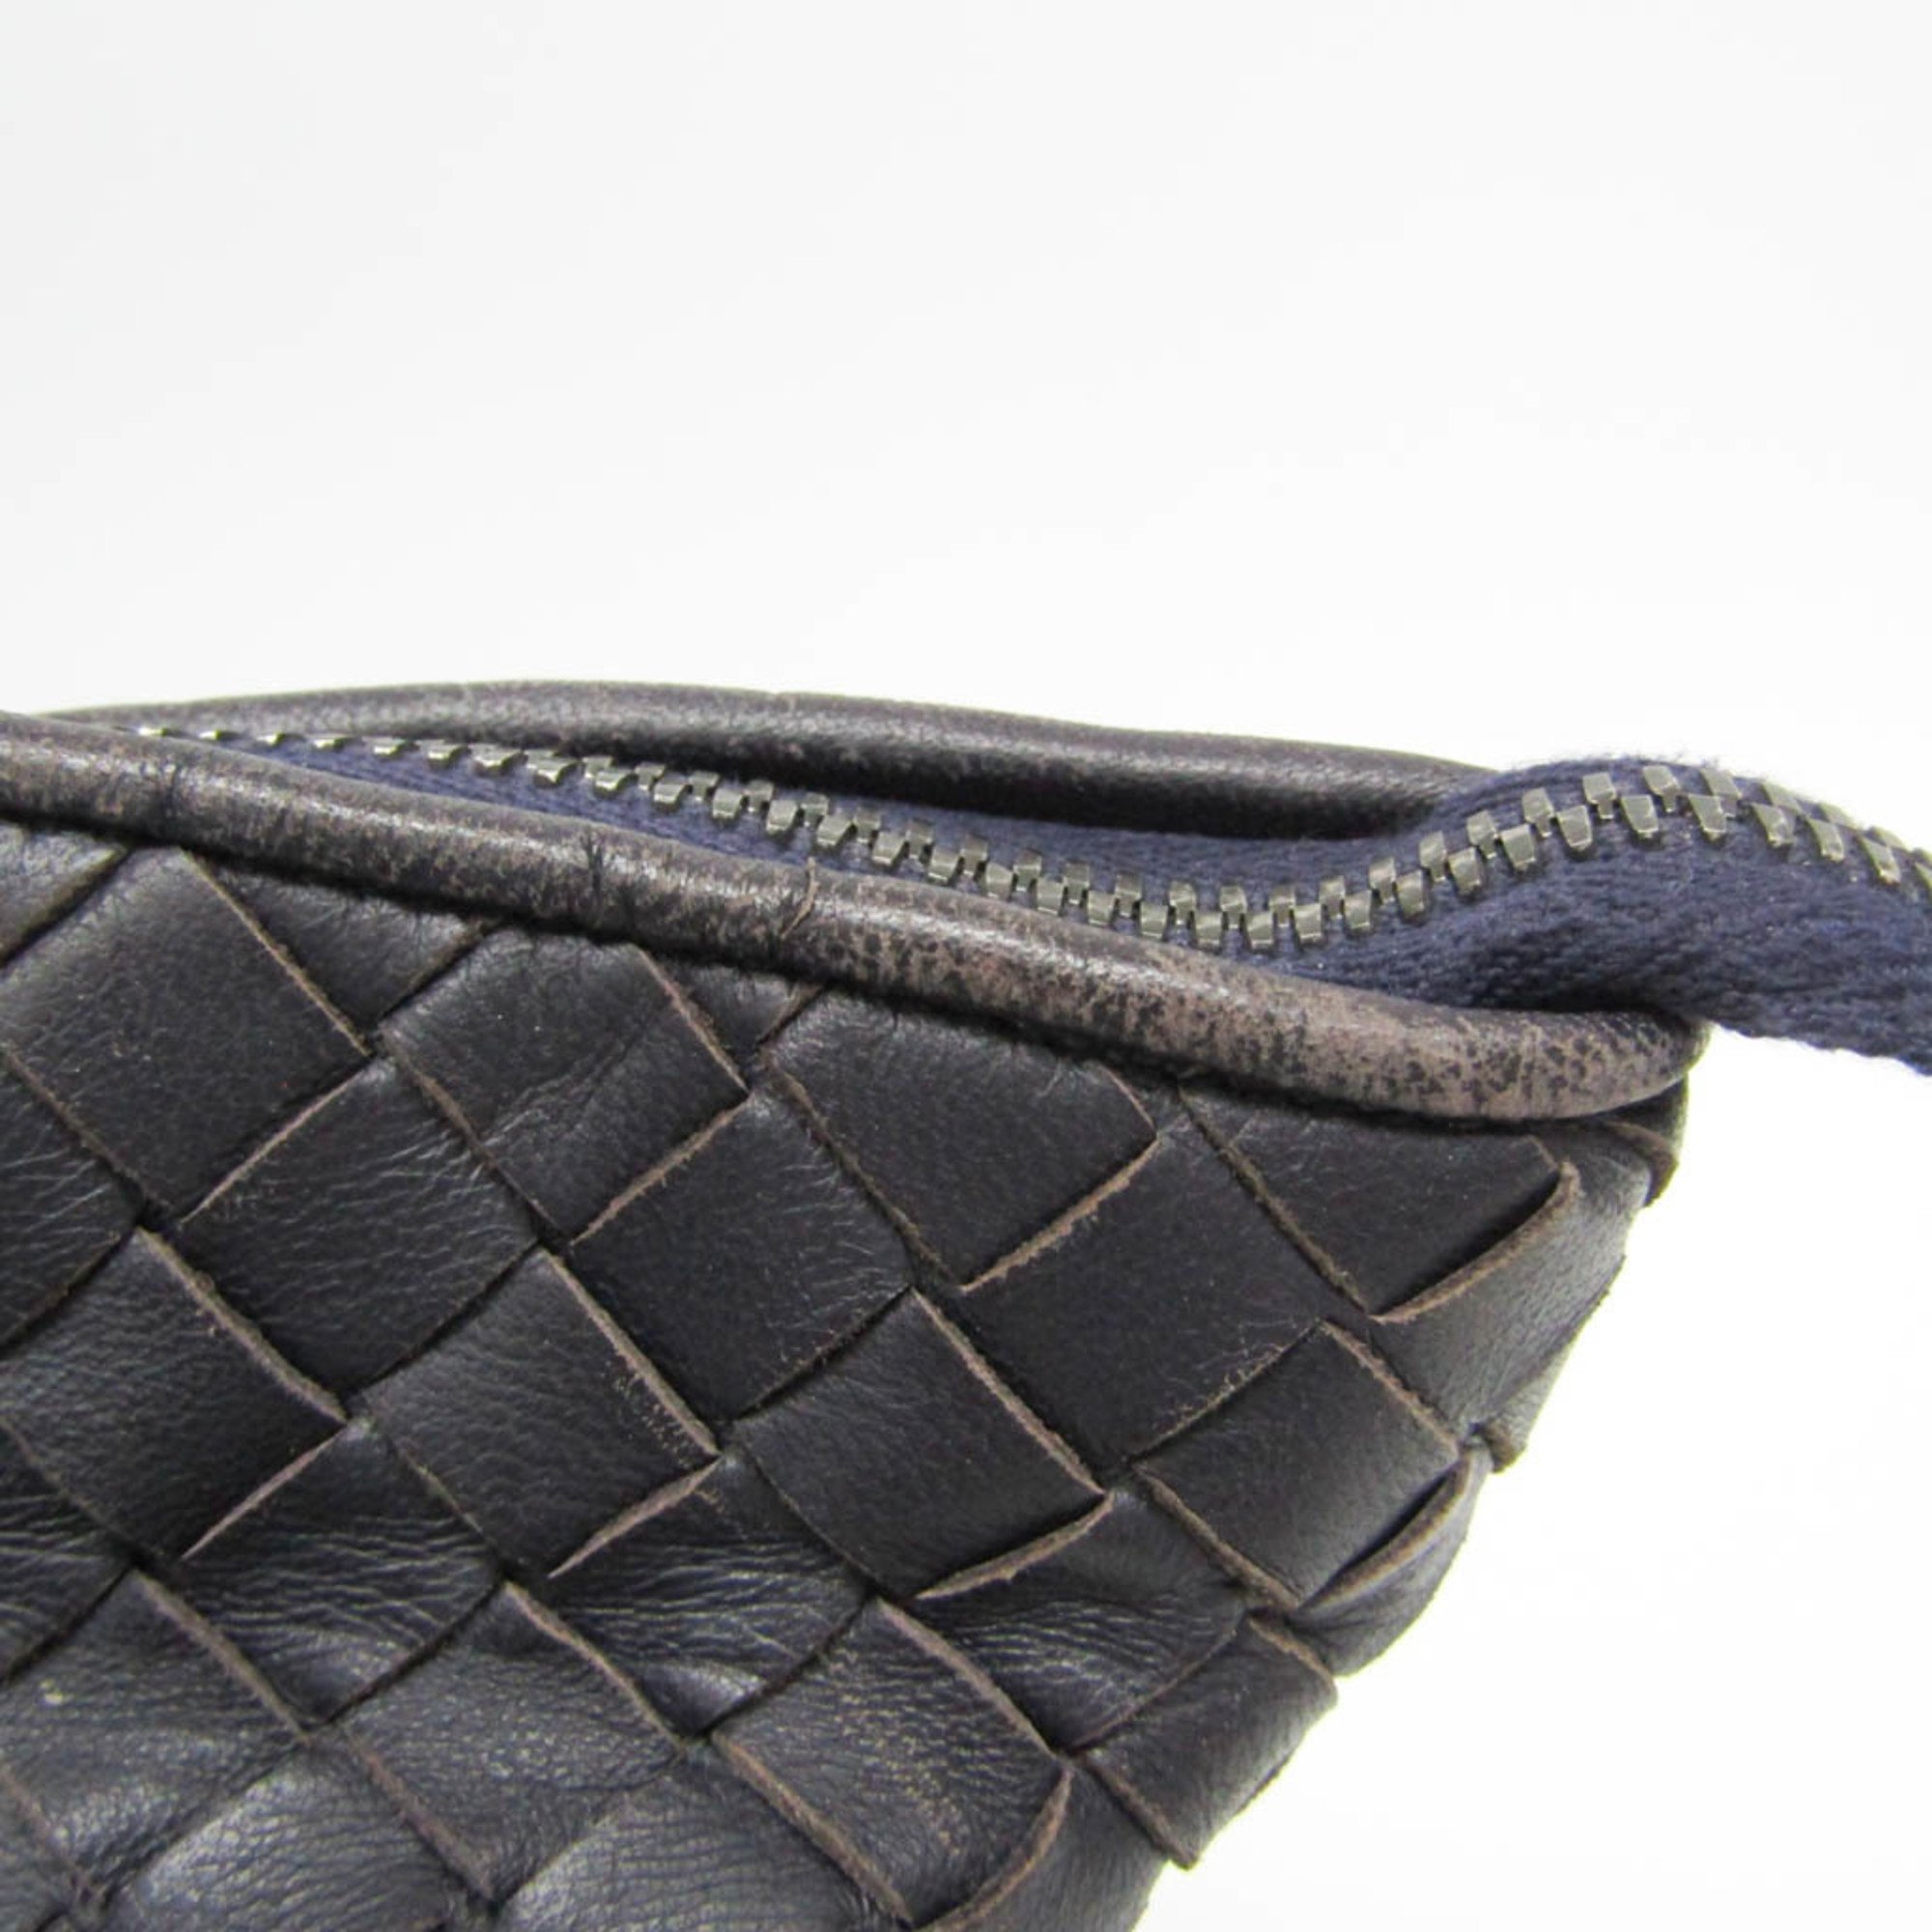 Bottega Veneta Intrecciato 214728 Women's Leather Handbag Dark Purple